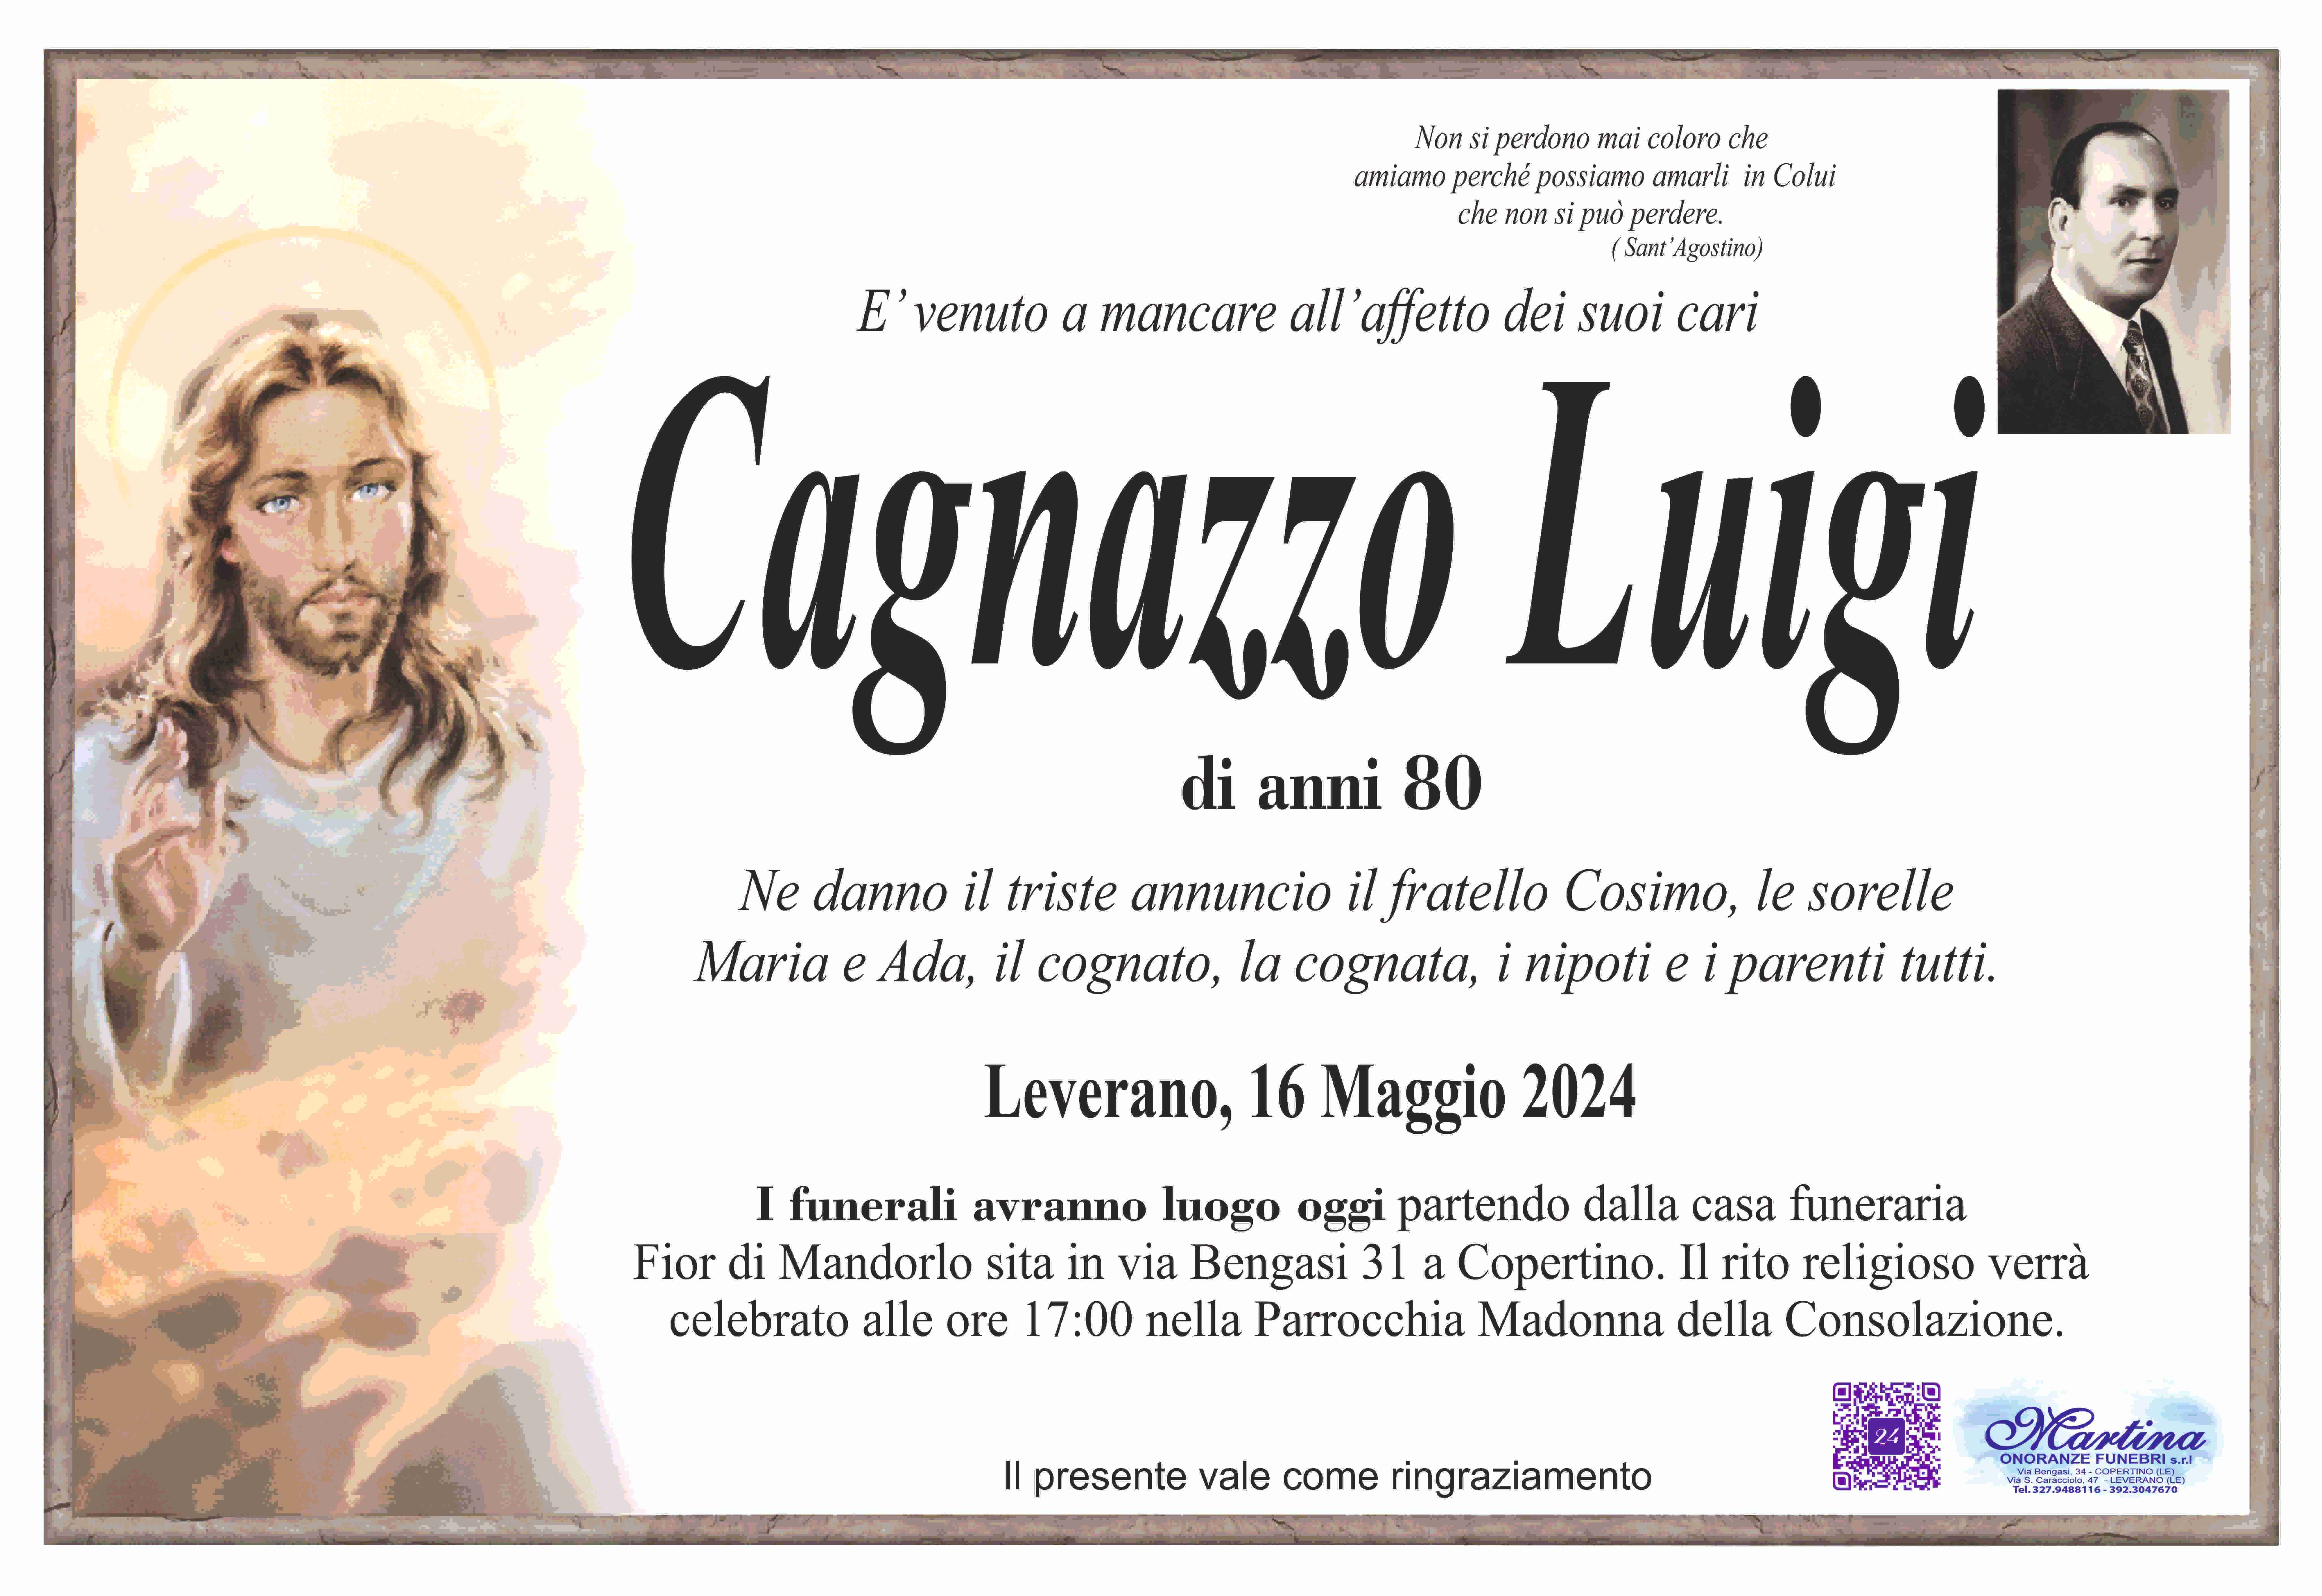 Luigi Cagnazzo